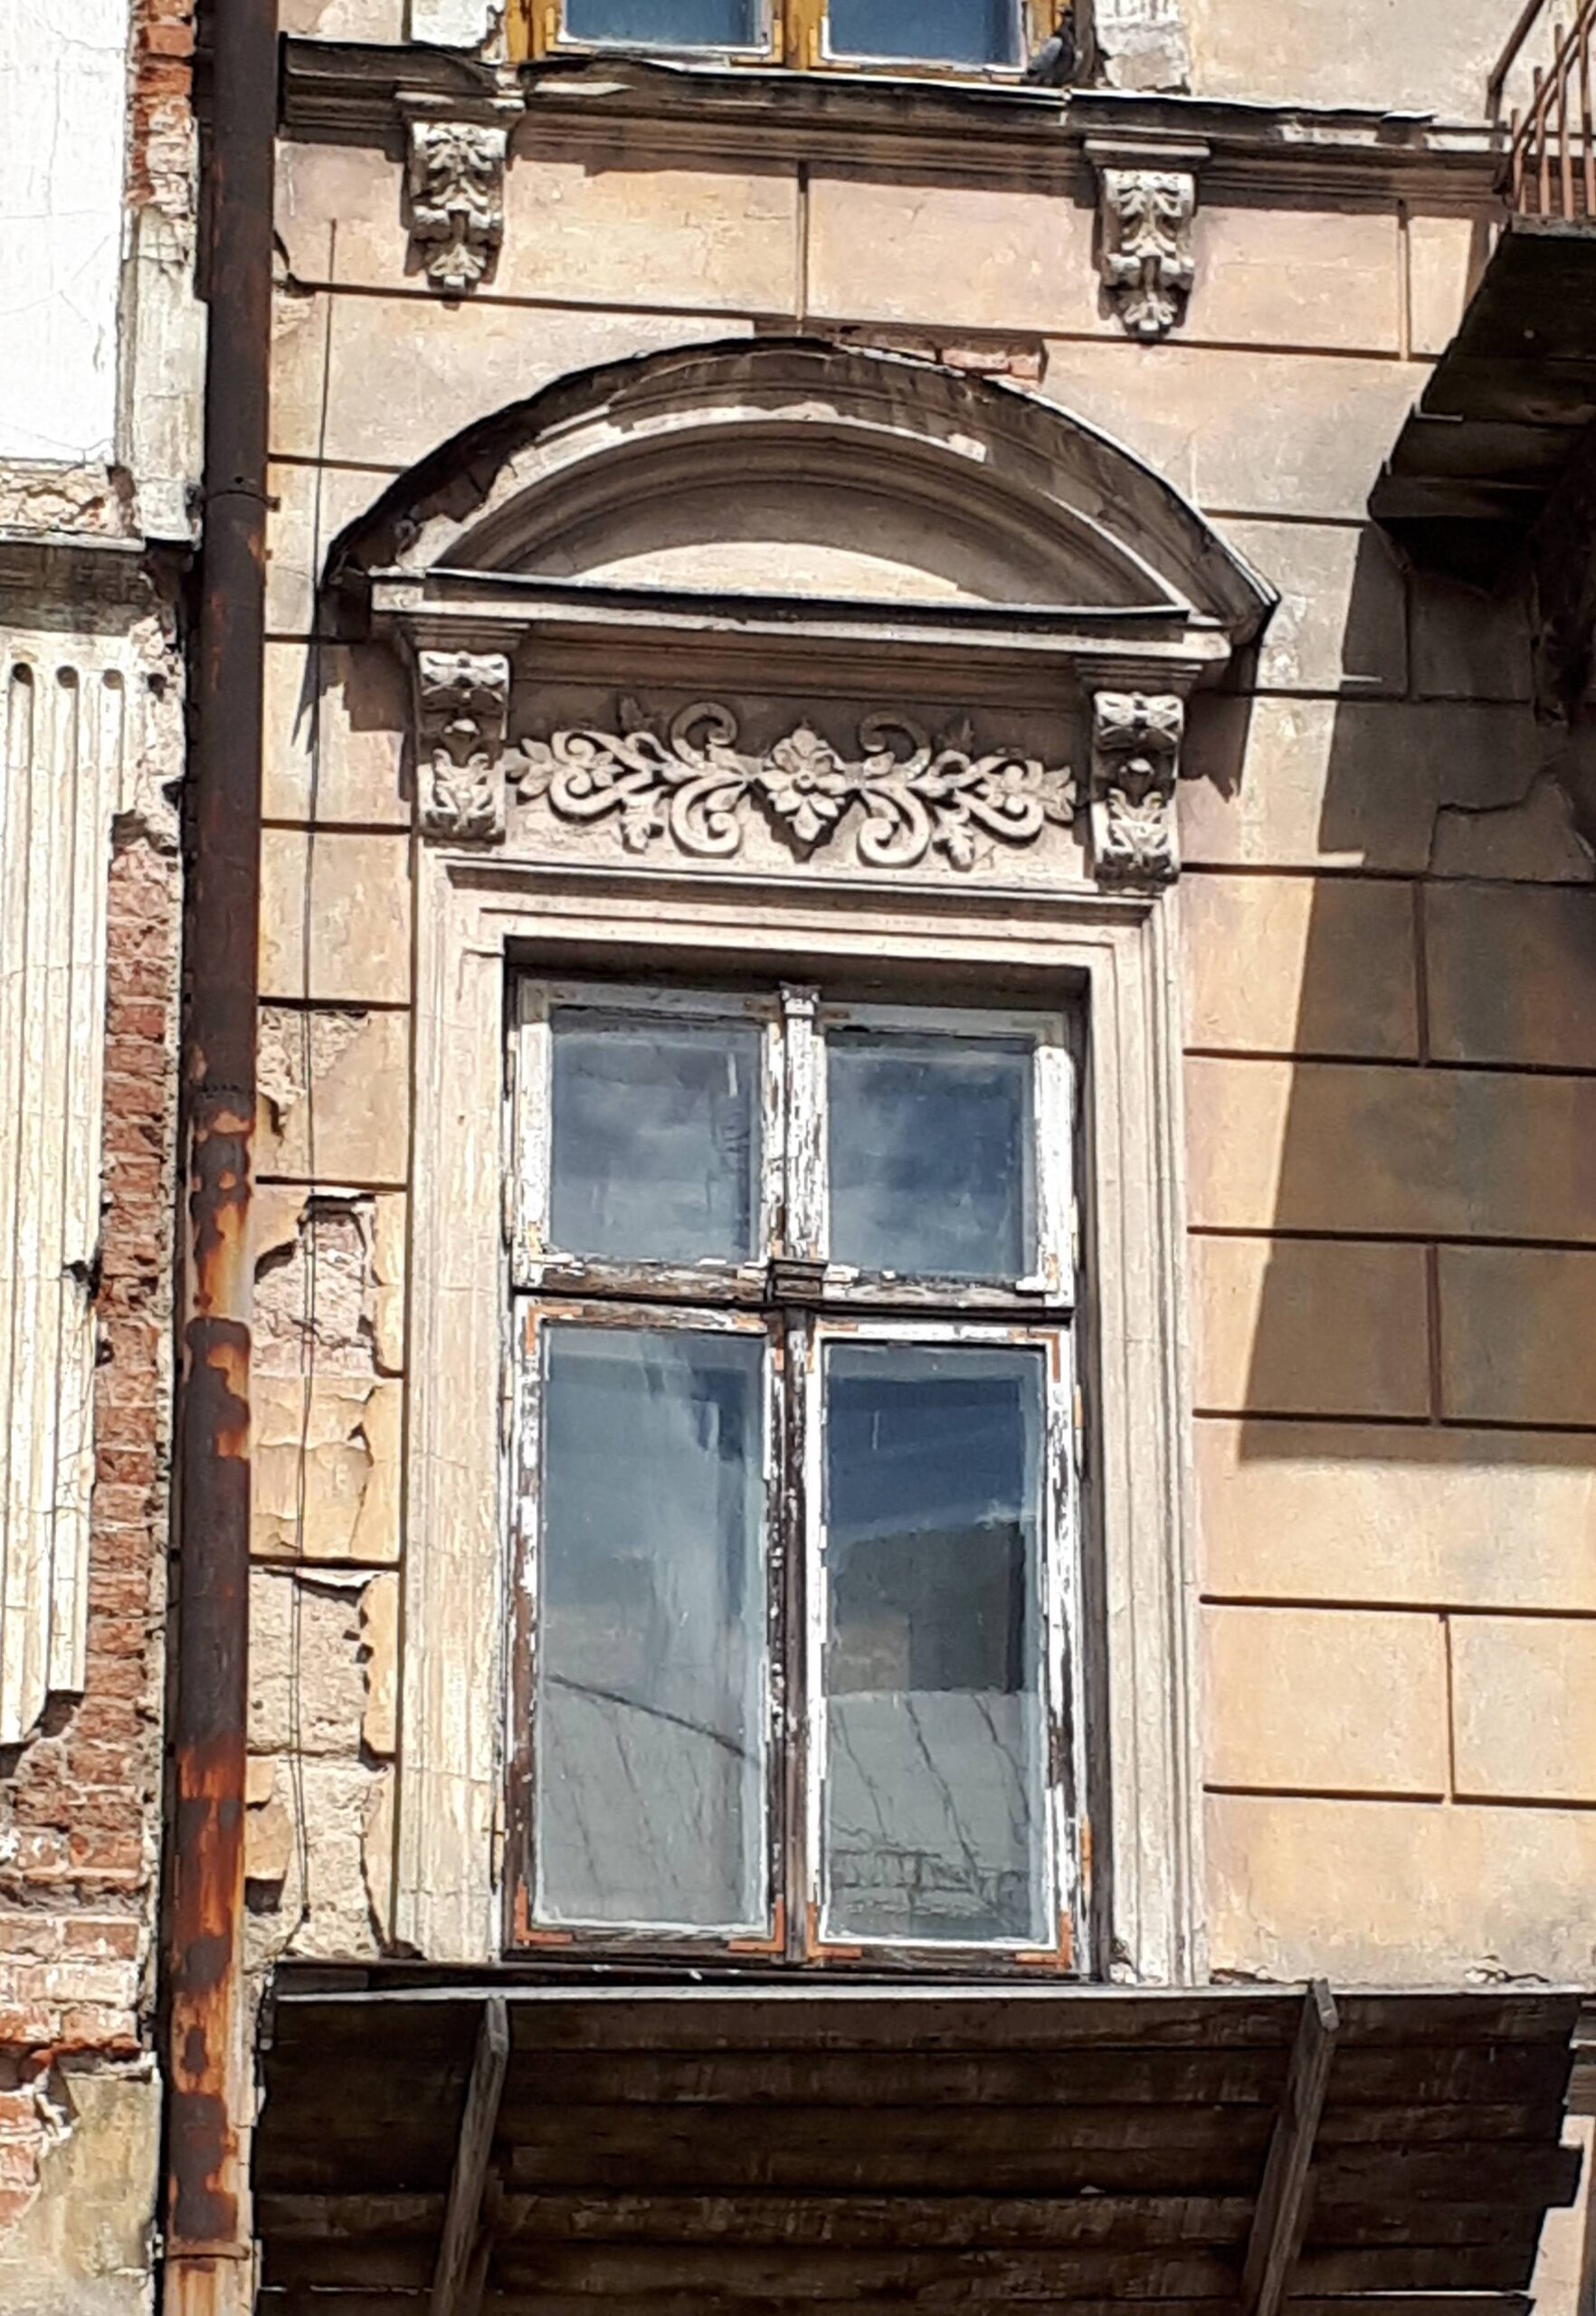 Elewacja frontowa - okno i piętra (pierwsze od lewej). Oryginalna stolarka. Fot. Robert Marcinkowski 2022 r., źródło: Res in Ornamento II.